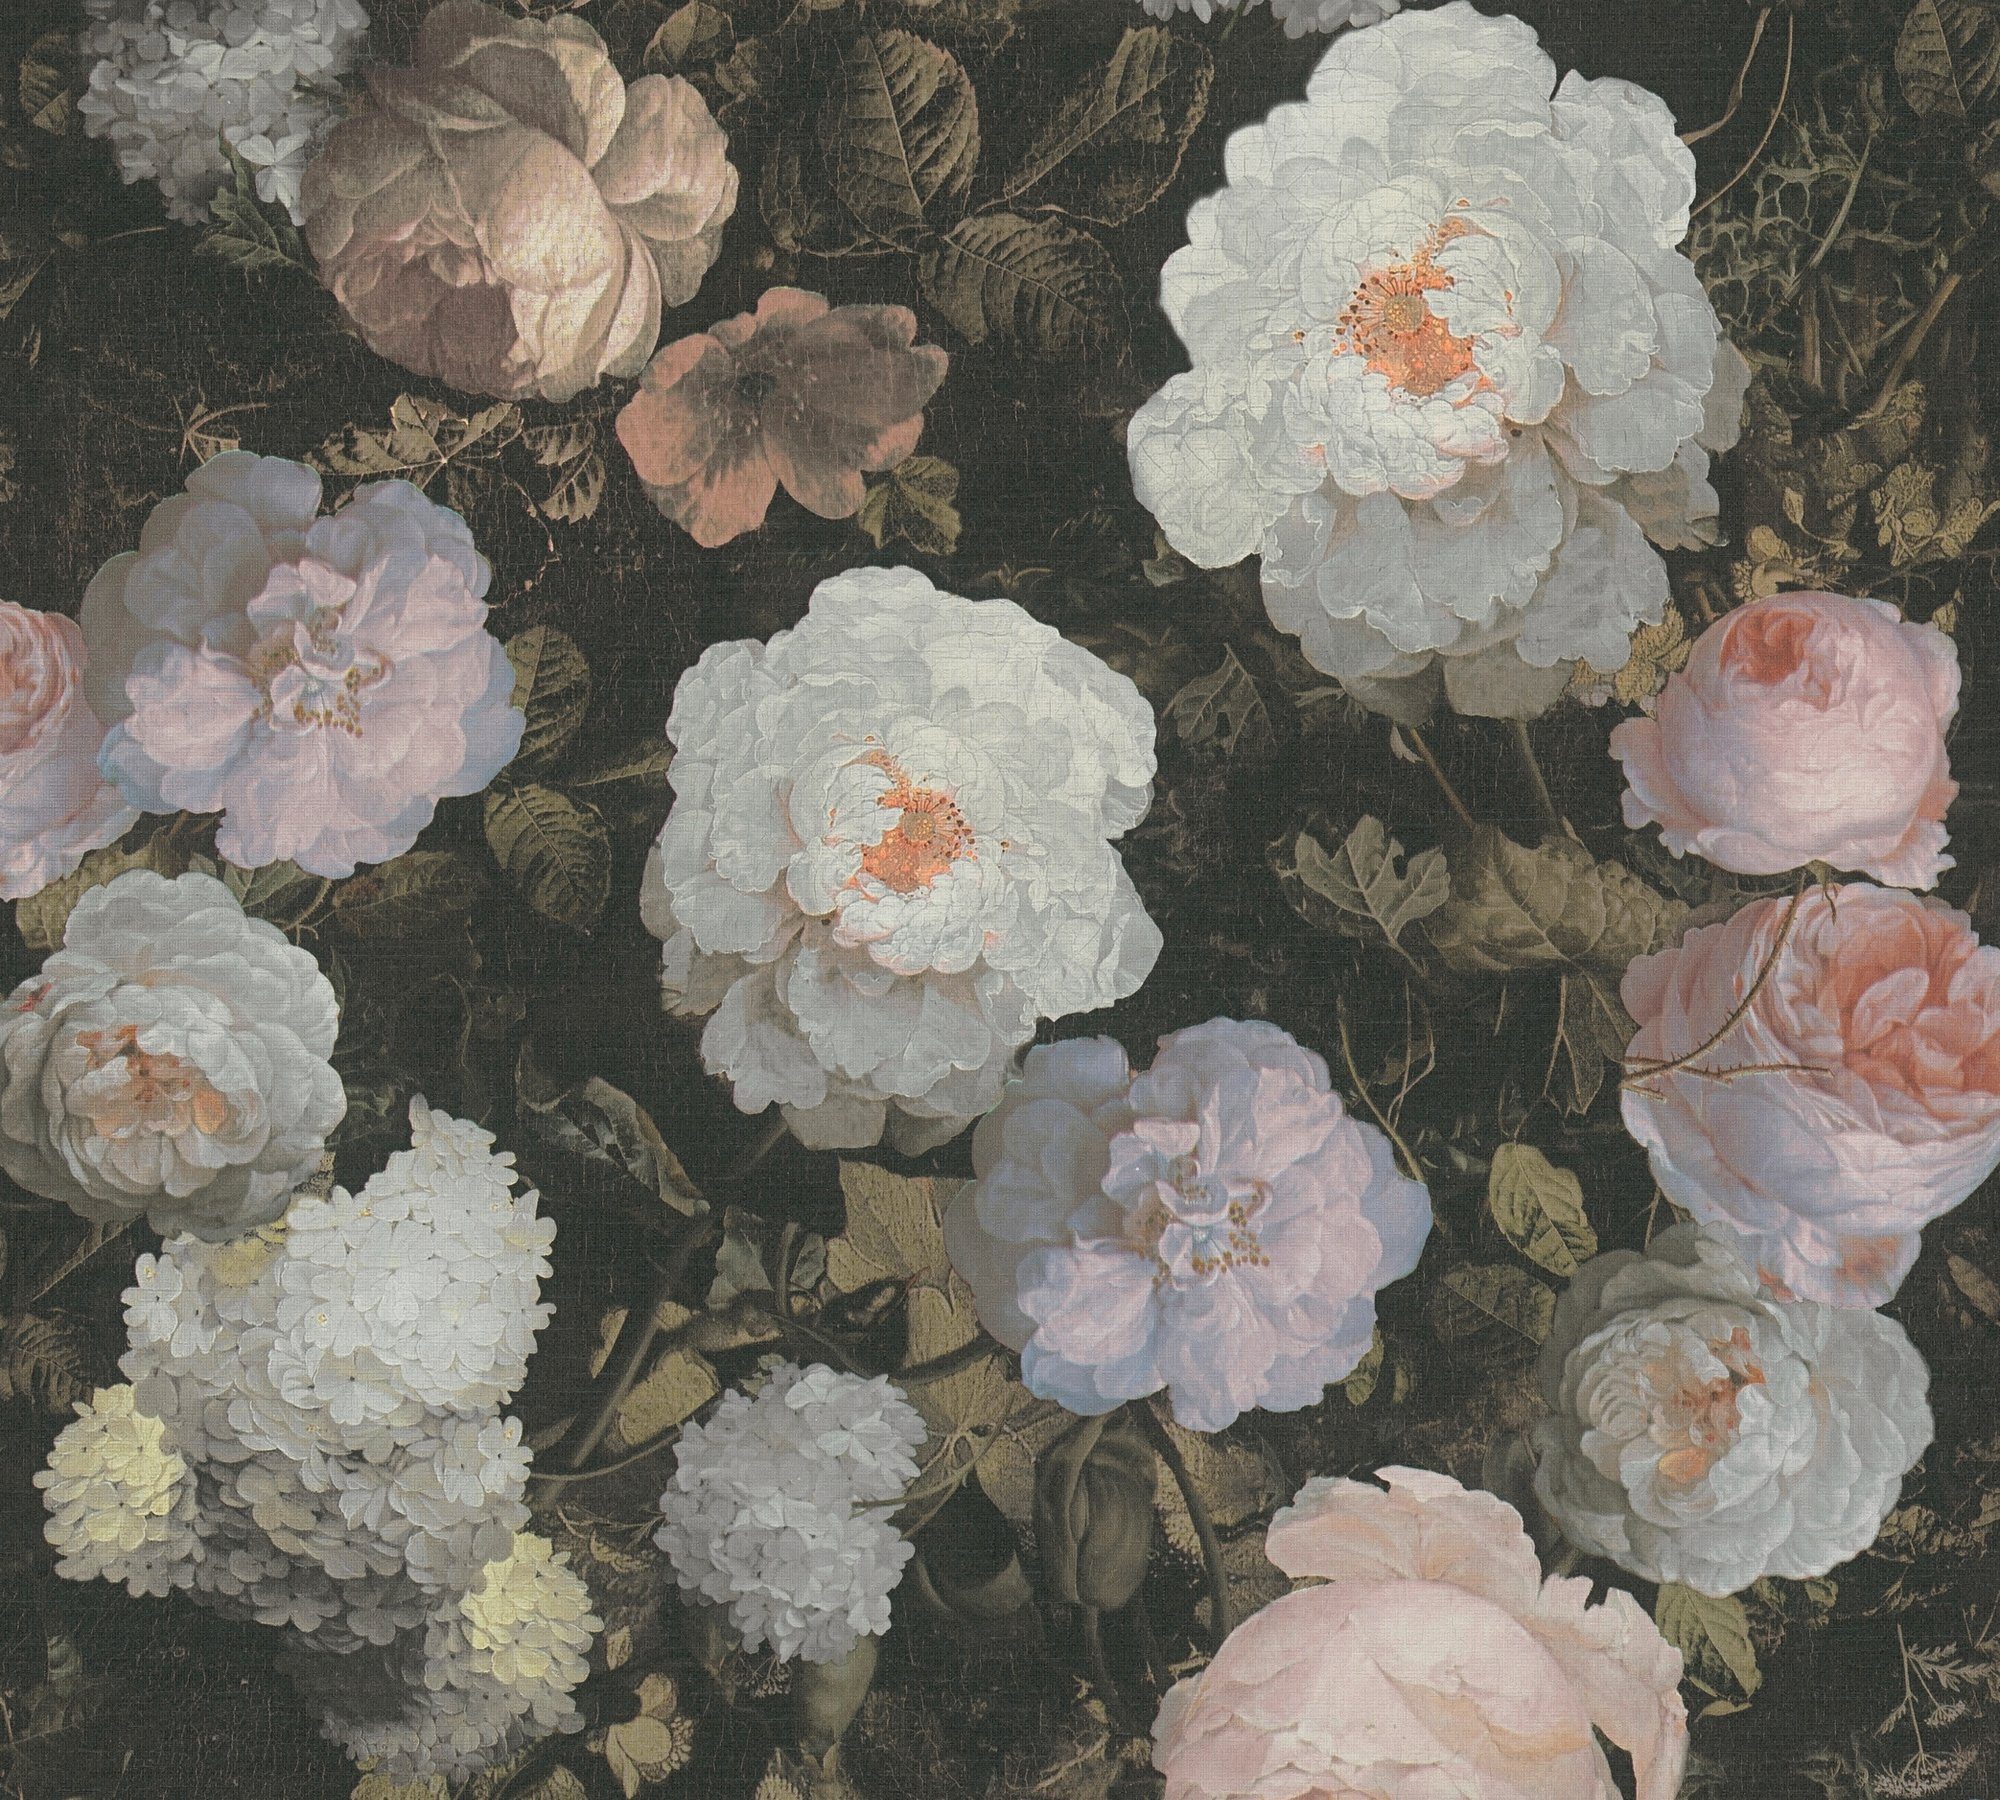 History of A.S. Blumen Art, Vliestapete botanisch, rosa/grün/weiß Création floral, Tapete